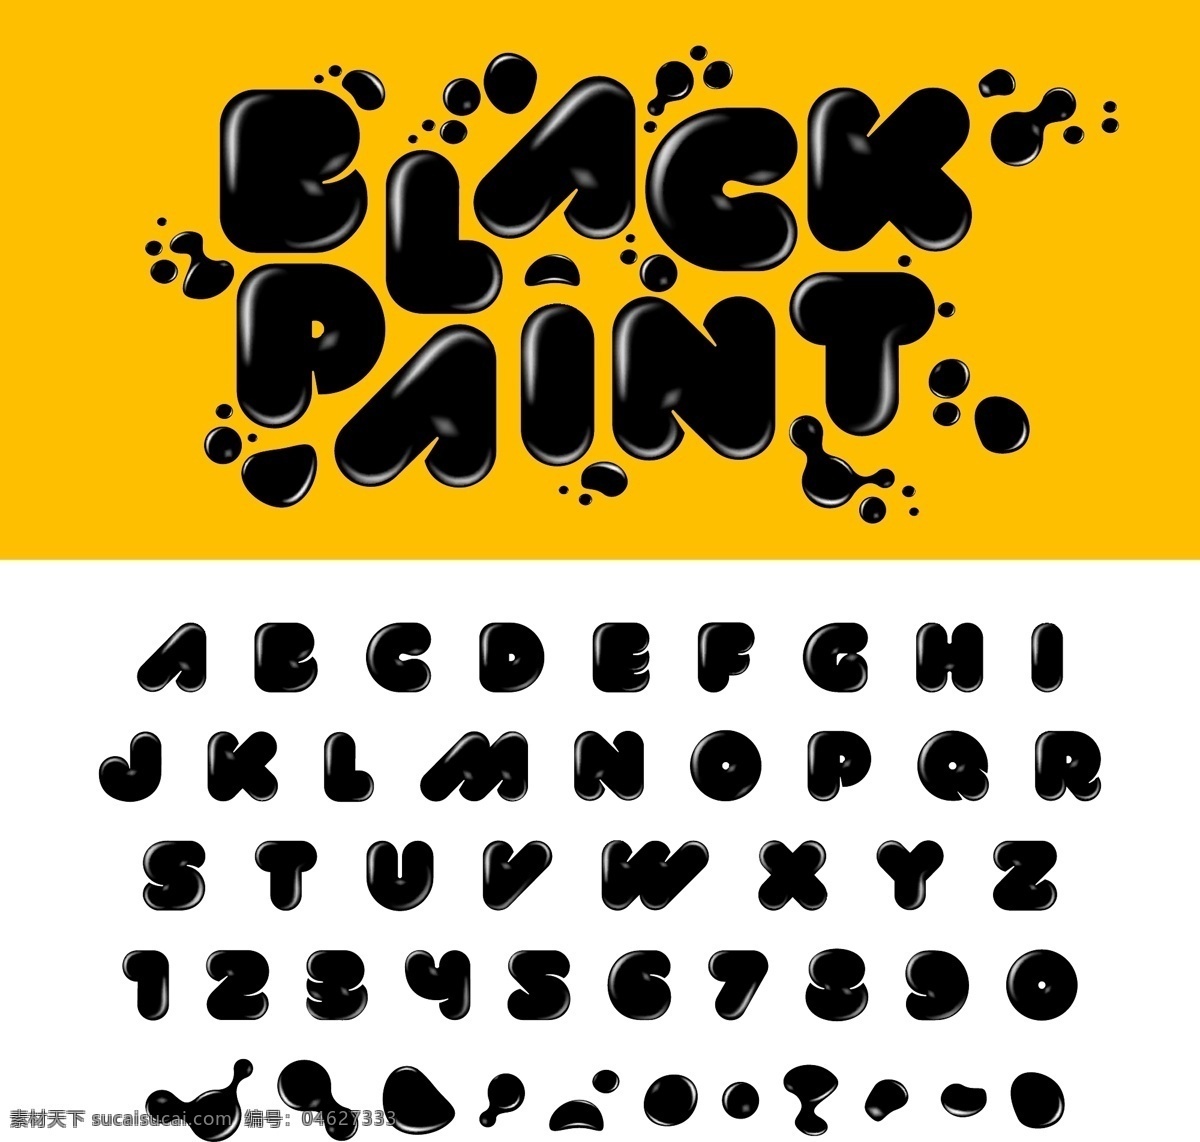 黑色 字母 卡通 高清 矢量 平面素材 设计素材 矢量素材 艺术 英文 主题 字体